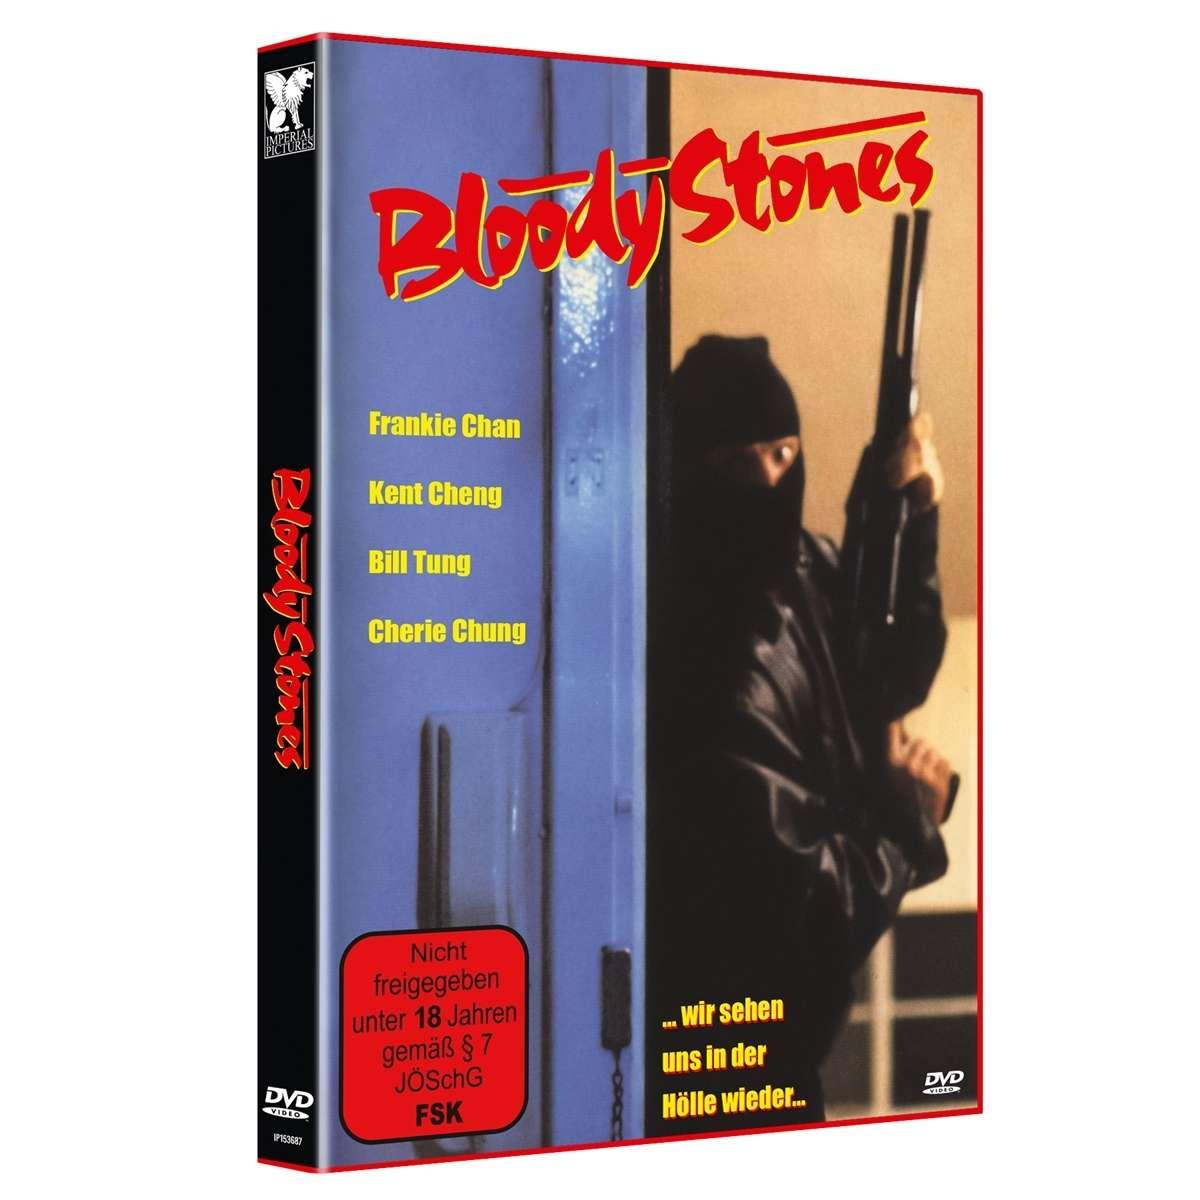 Bloody DVD sehen uns Stones-Wir wieder der in Hölle